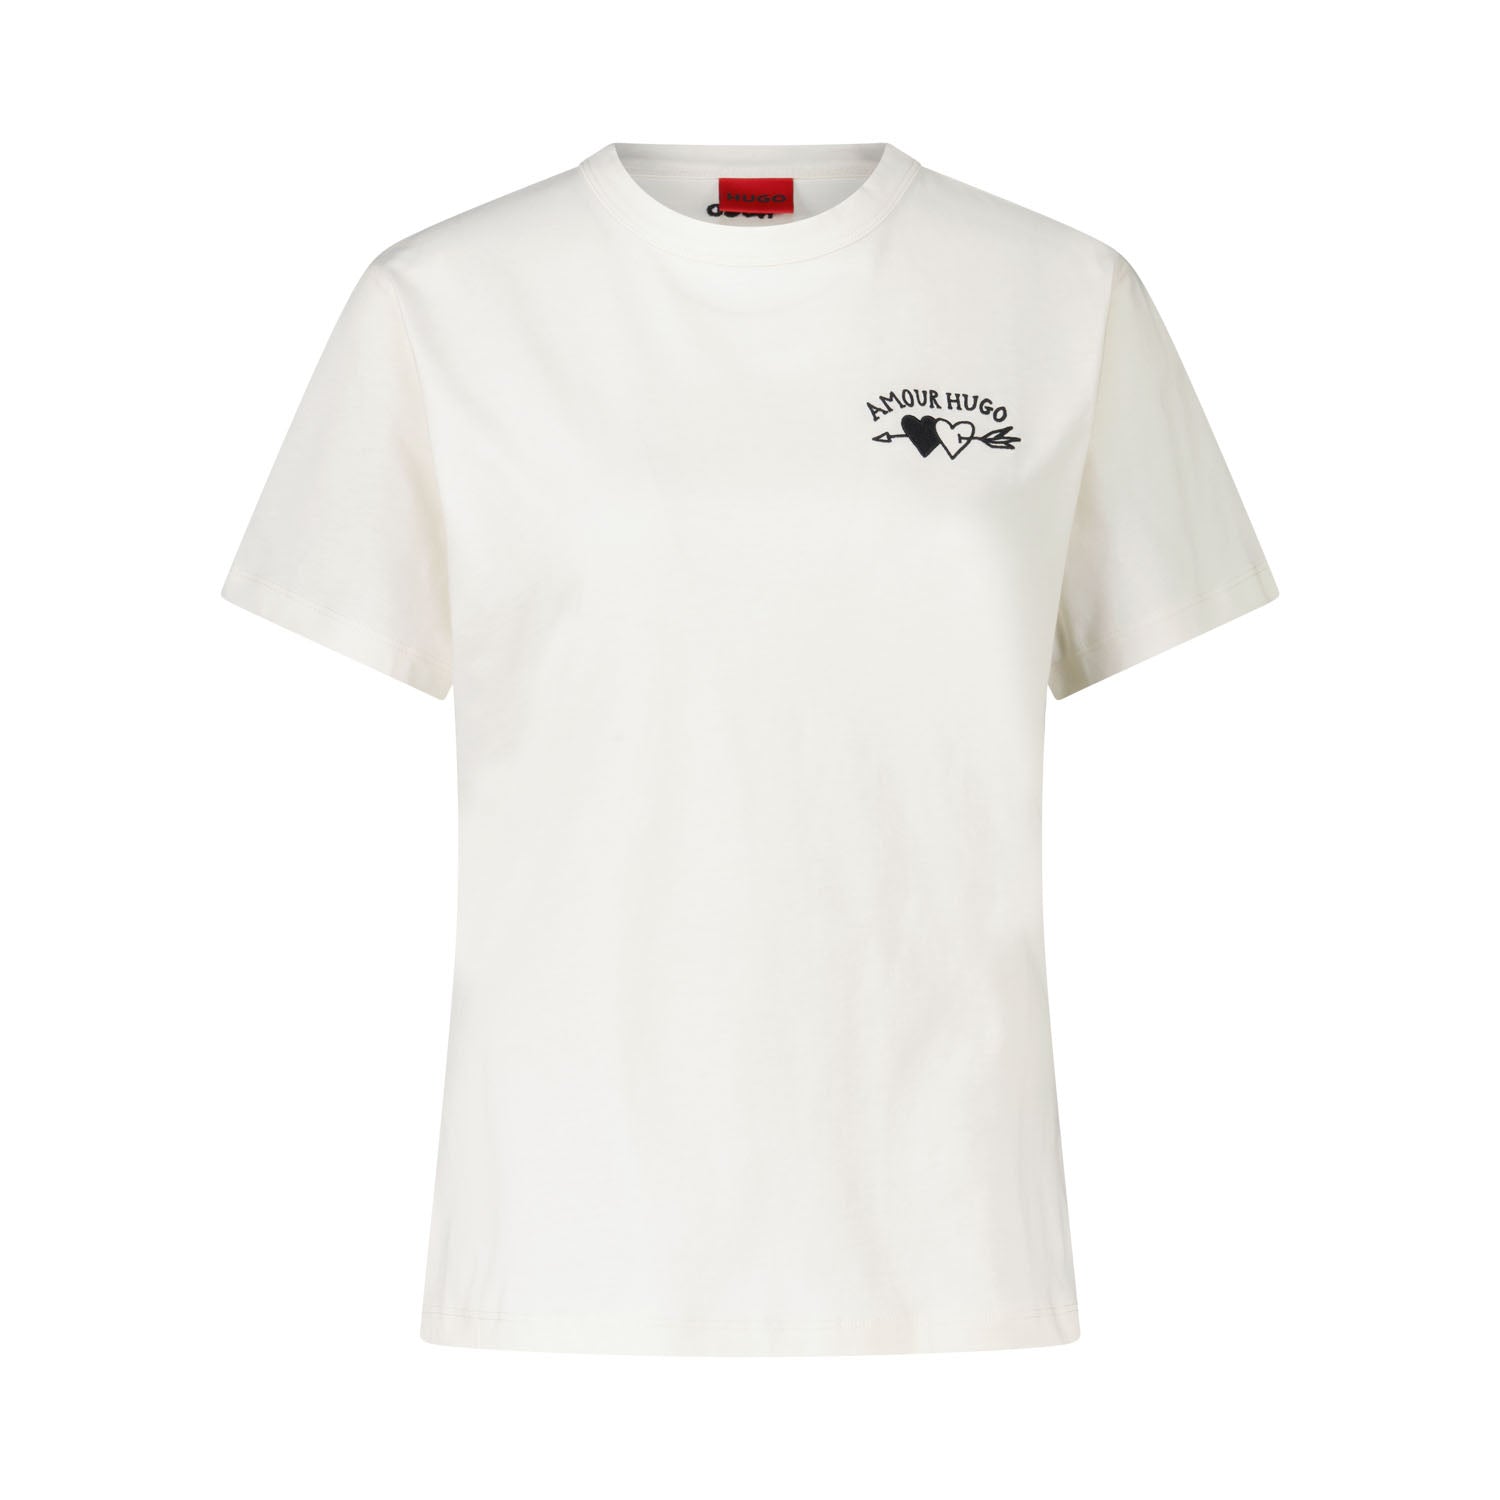 T-Shirt Damacia mit Stickerei Amour Hugo